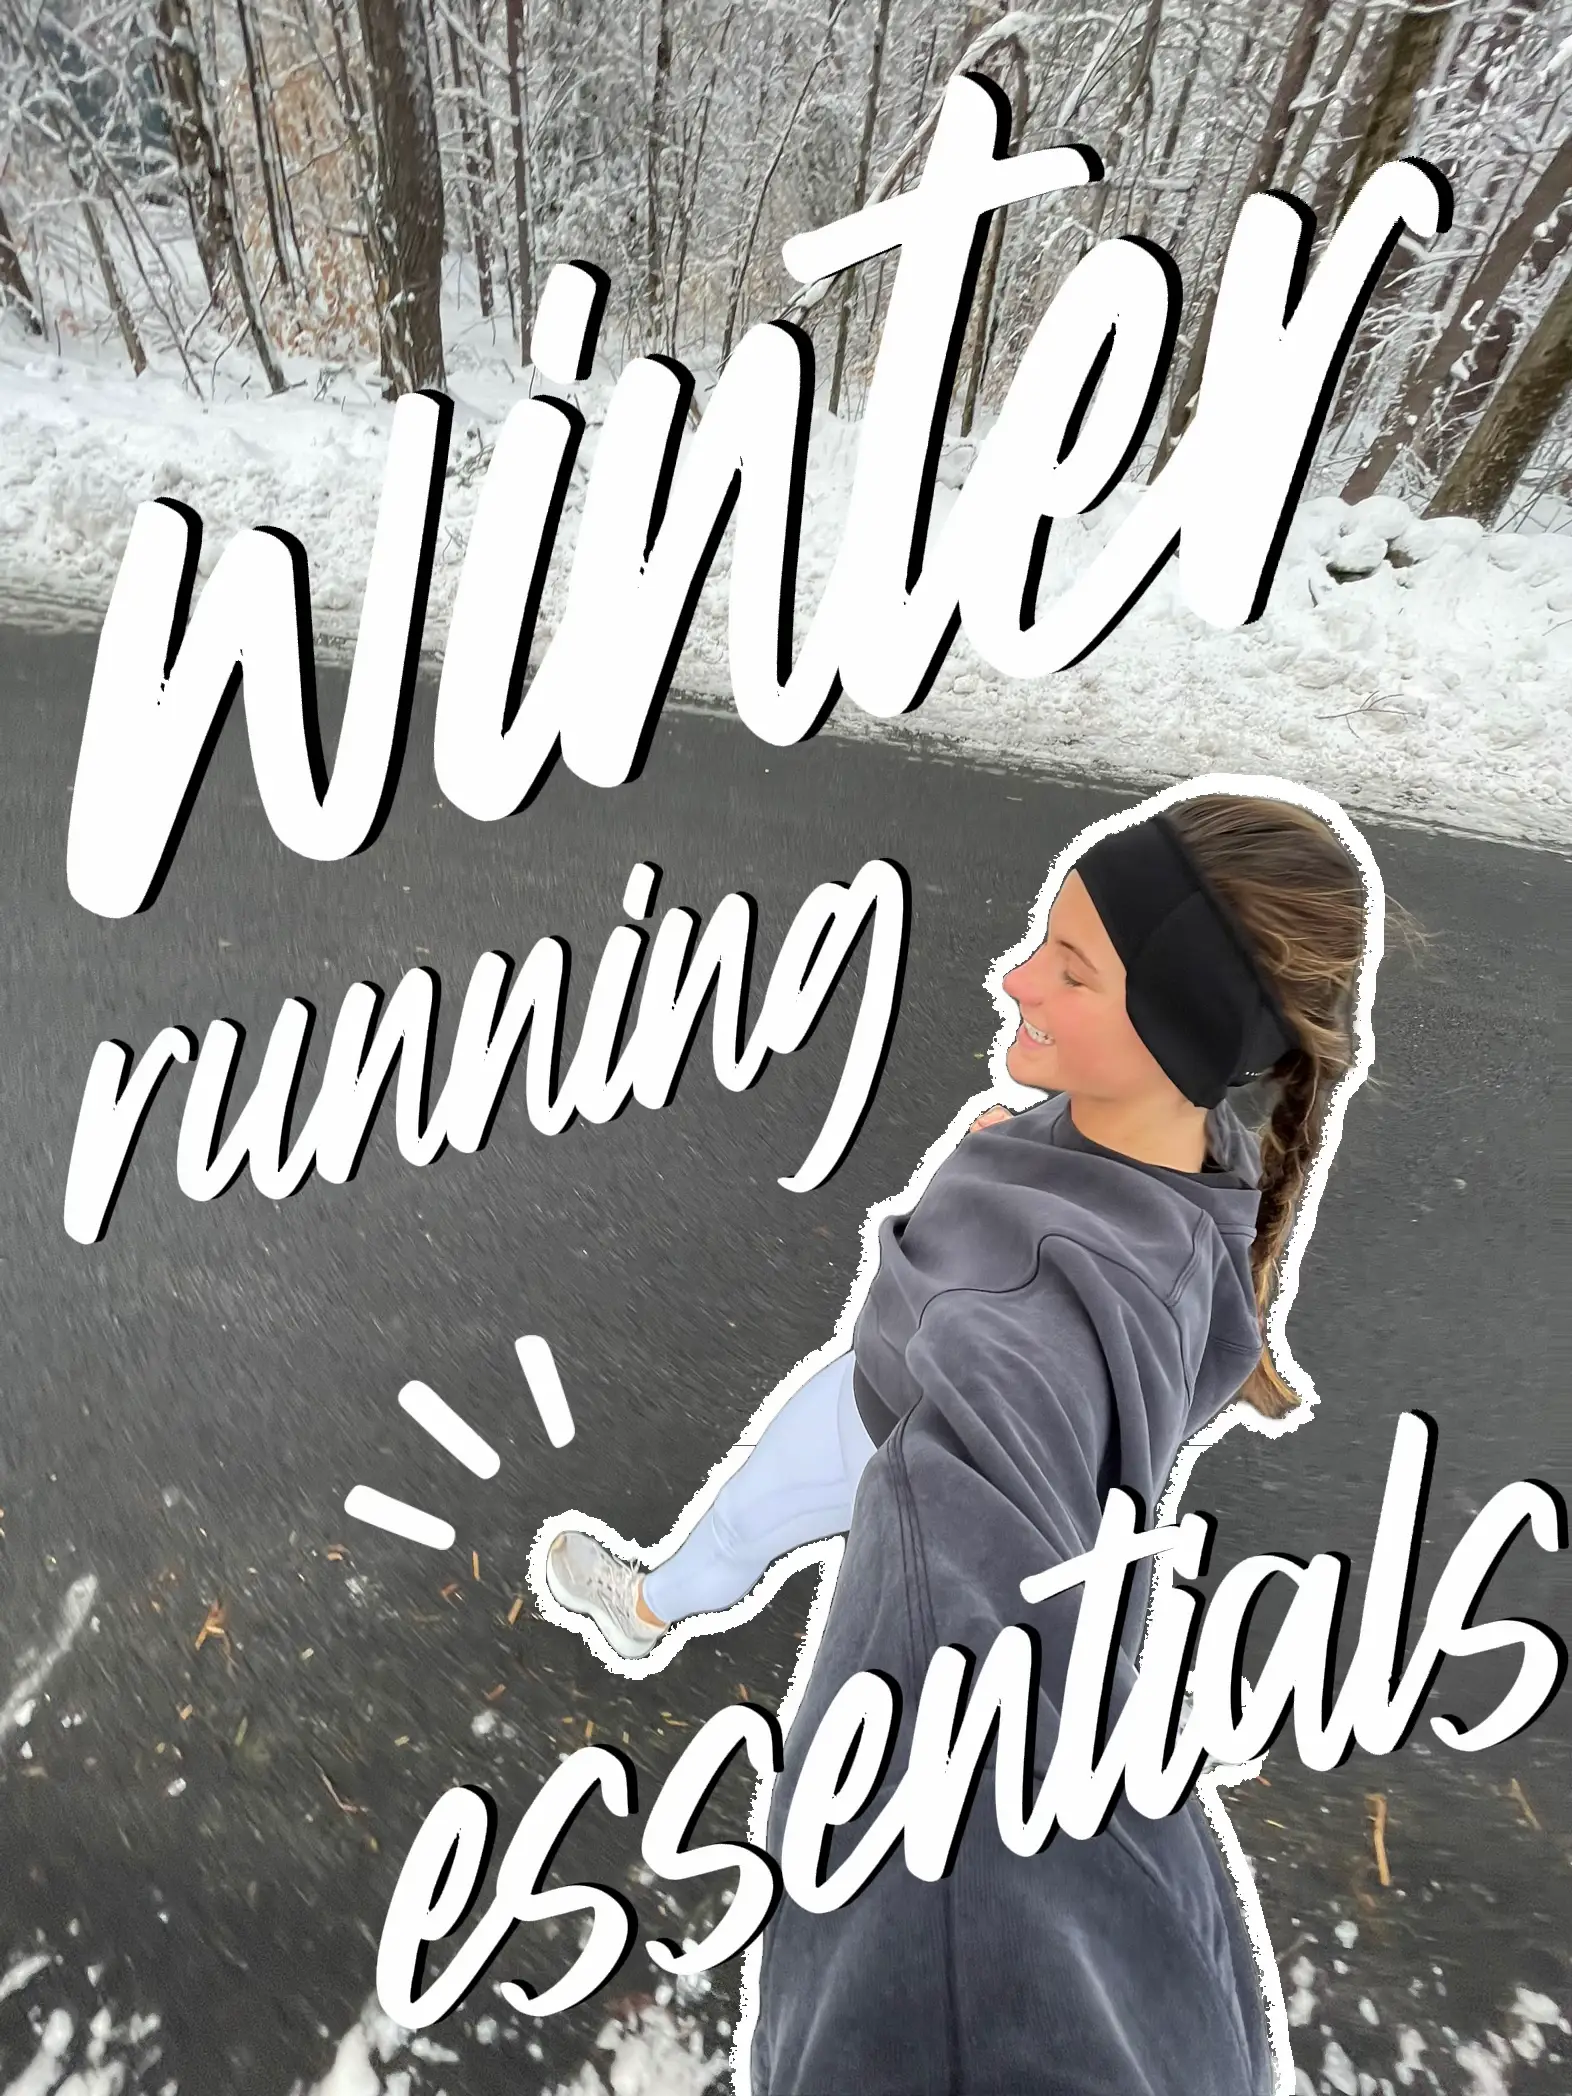 Decathlon Running Tights - Great Value Running Tights For Men This Winter? # running #runninggear 